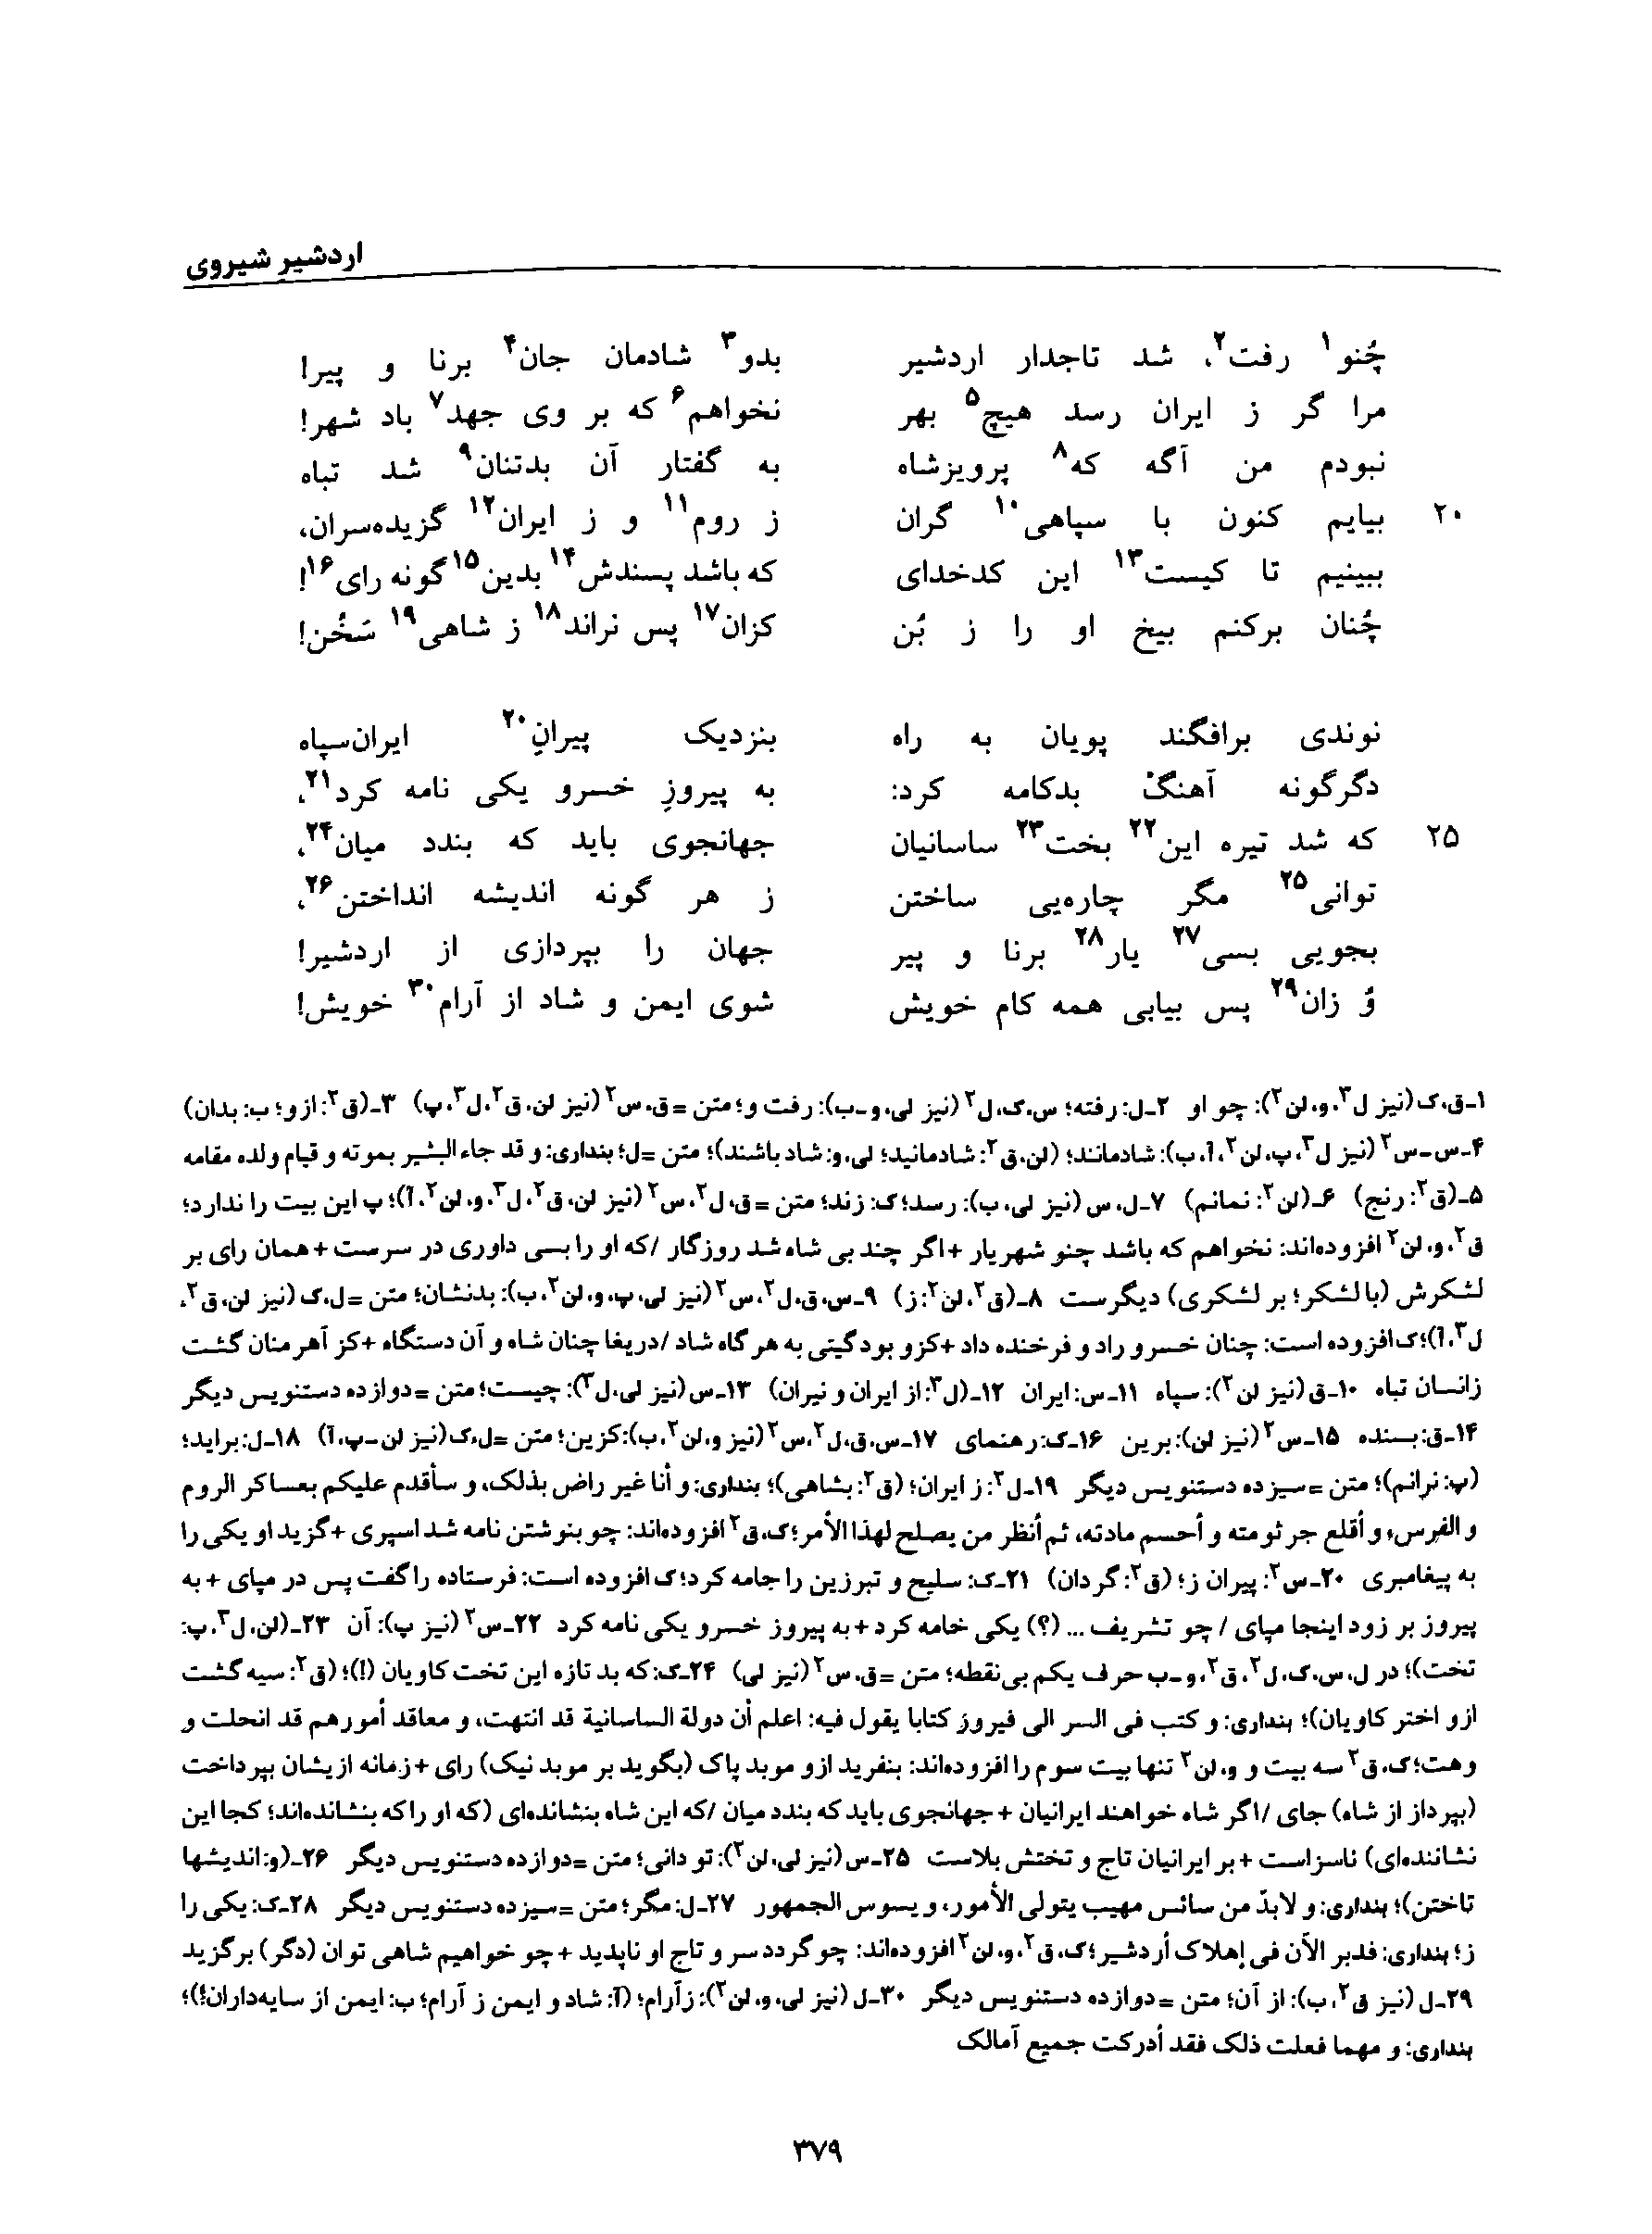 vol. 8, p. 379